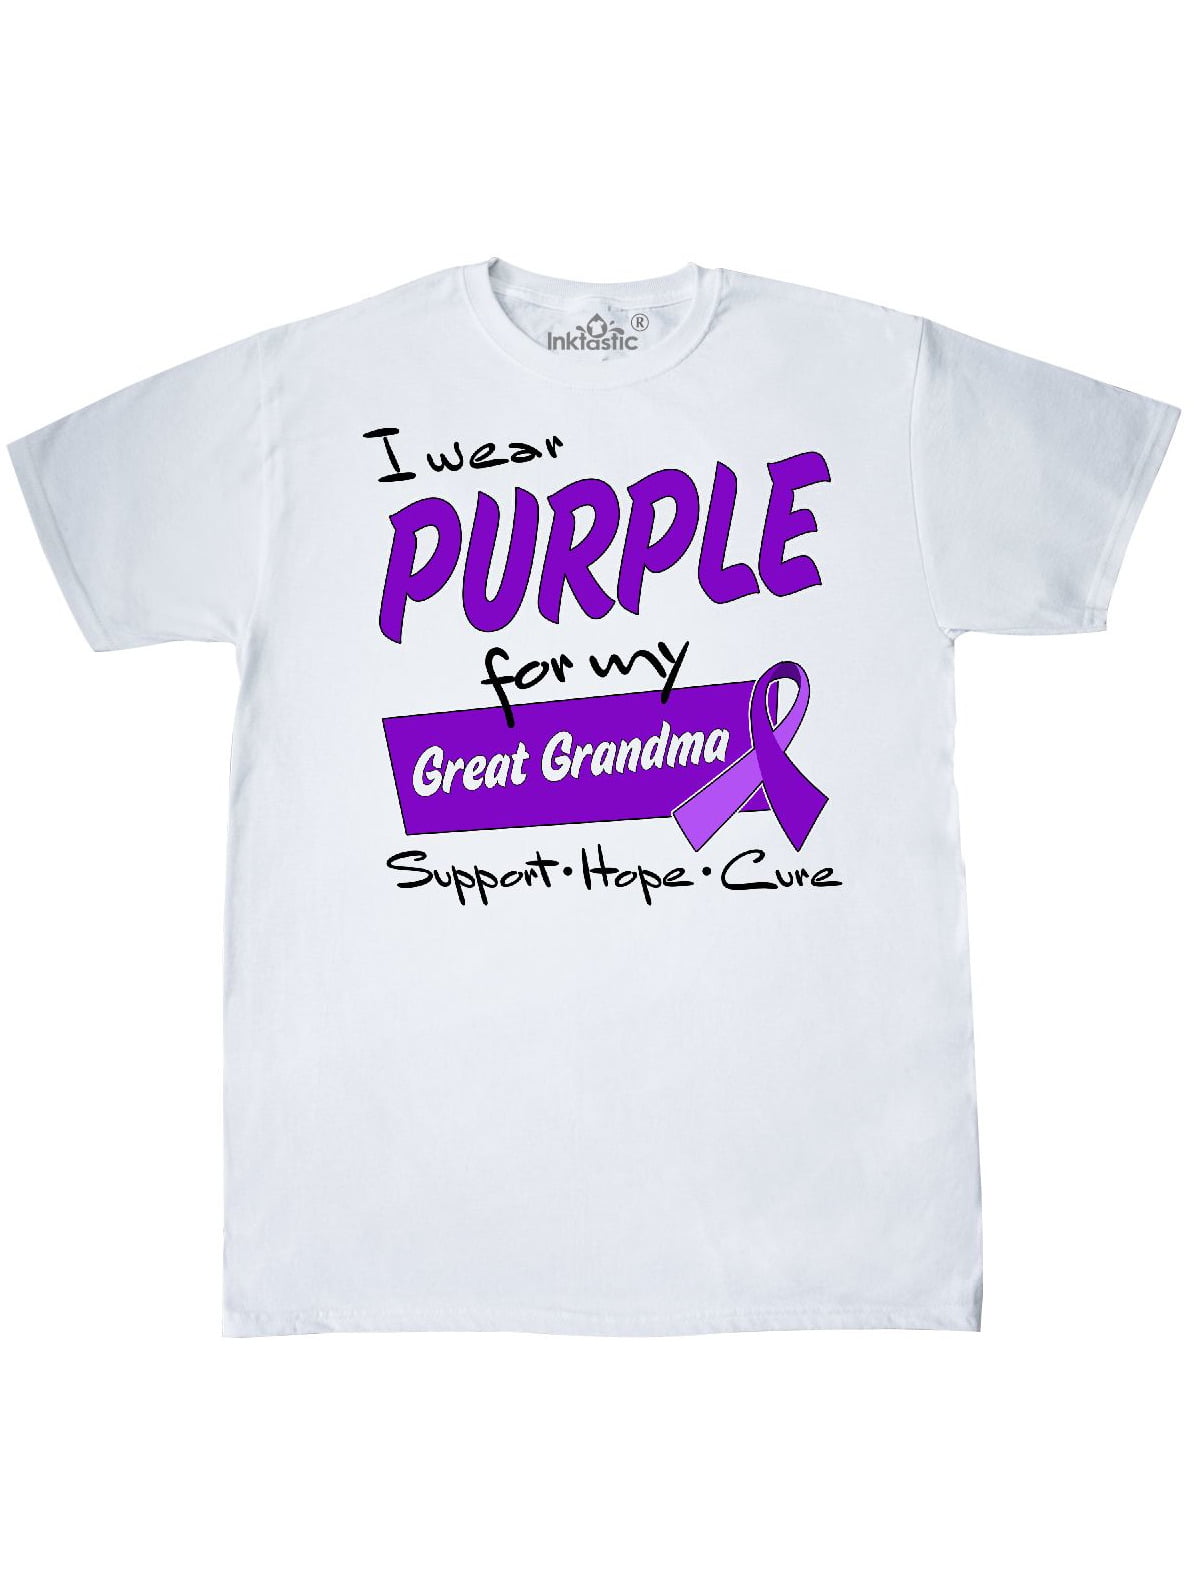 Metallic Finish Black Donations Ash Purple Lung Disease Adult Unisex T-Shirt Grey Please Read Description